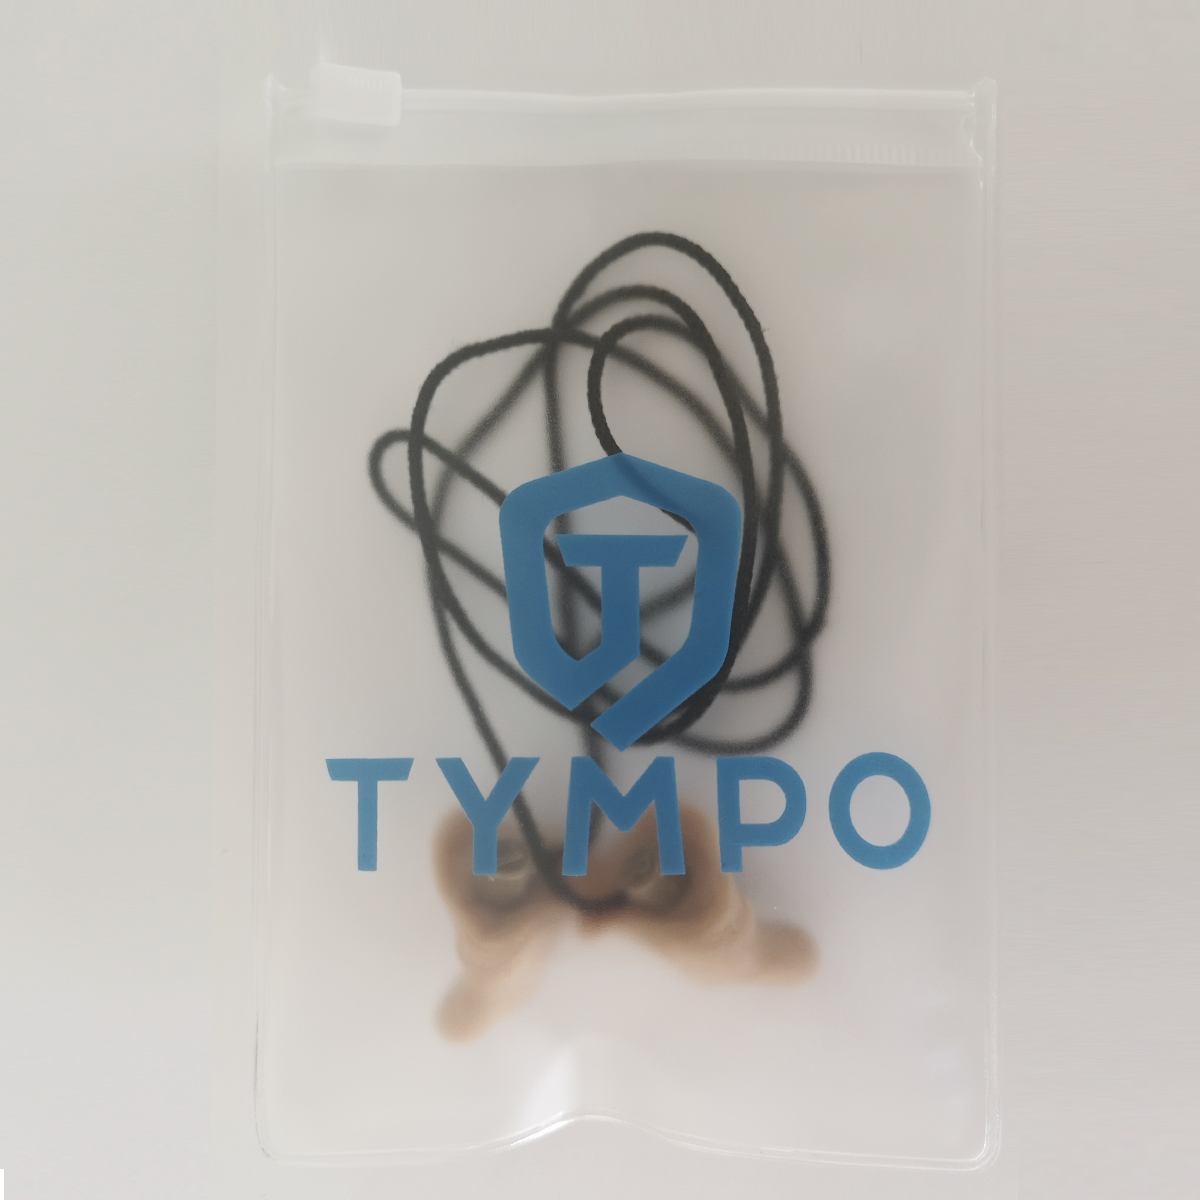 TYMPO bouchons d'oreille moulés sur mesure Bleu. 1 Kit pour réaliser  soi-même 2 paires de boule quies sur mesure en silicone. Bouchons d'oreille  pour dormir, pour l'avion et le bricolage : 